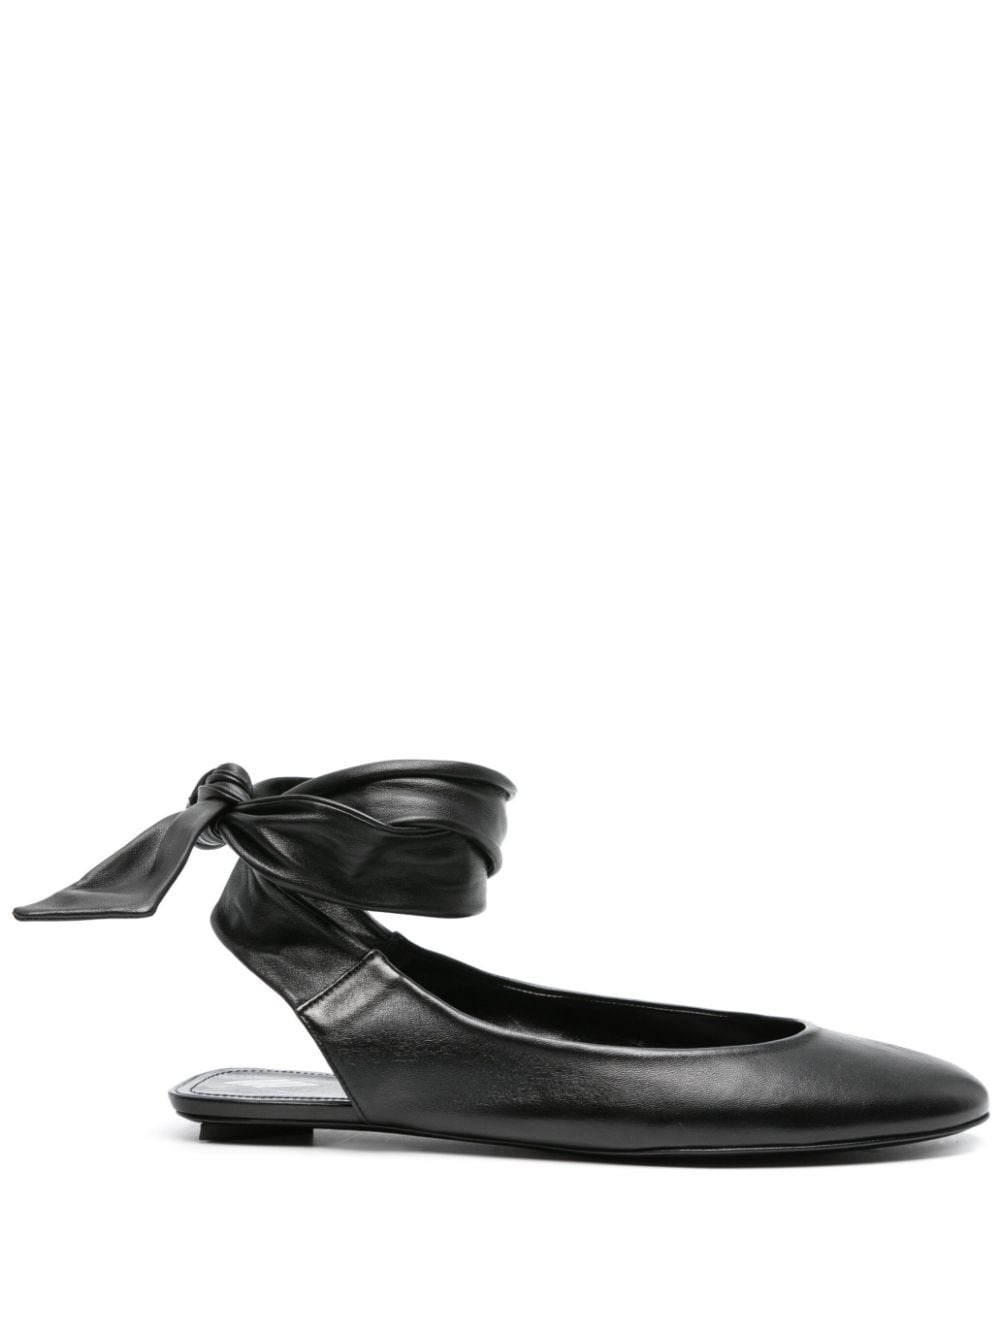 Cloe ballerina shoes - 1